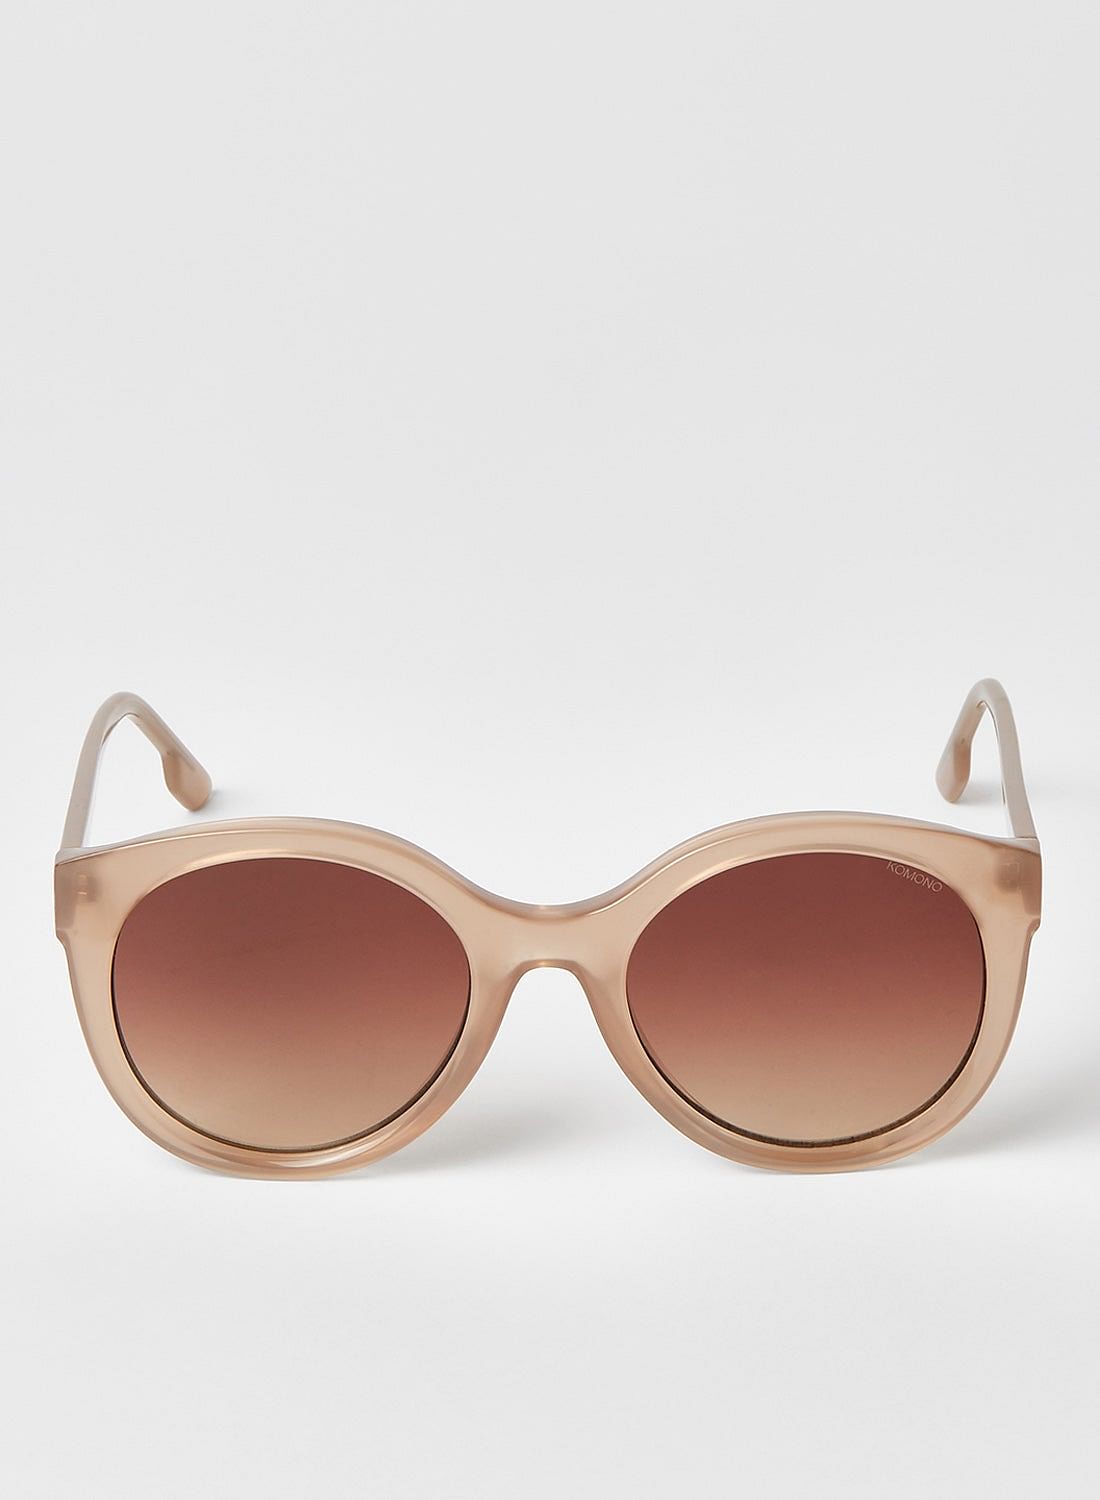 Komono Women's Elis Sunglasses